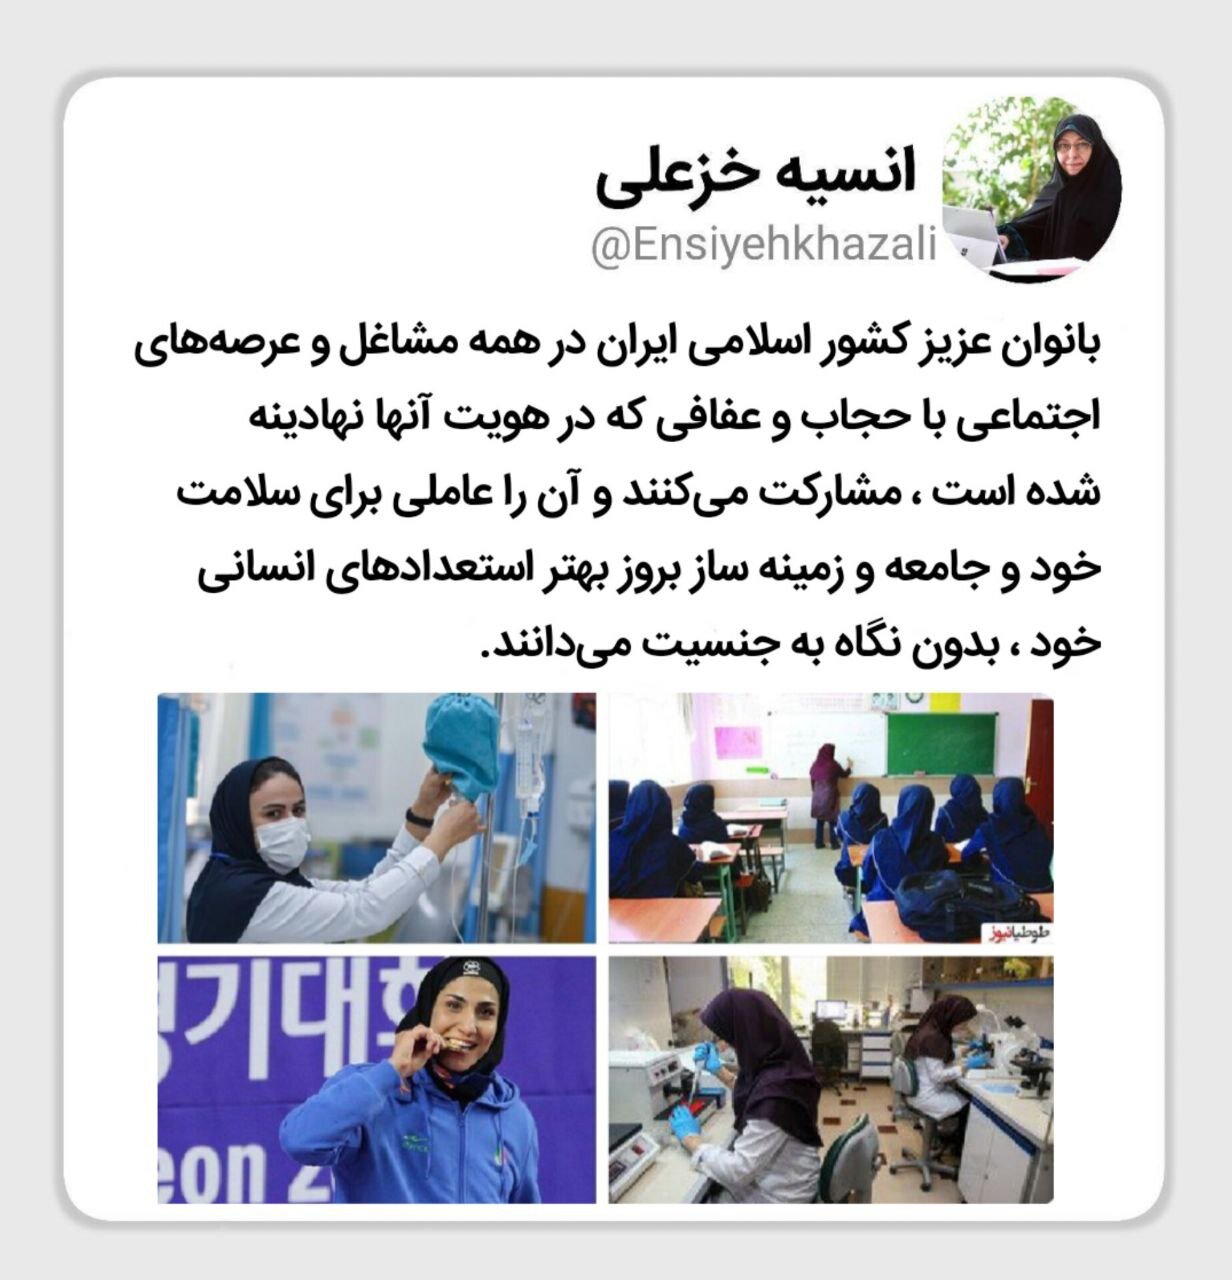 عفاف در ذات زنان ایرانی نهادینه است